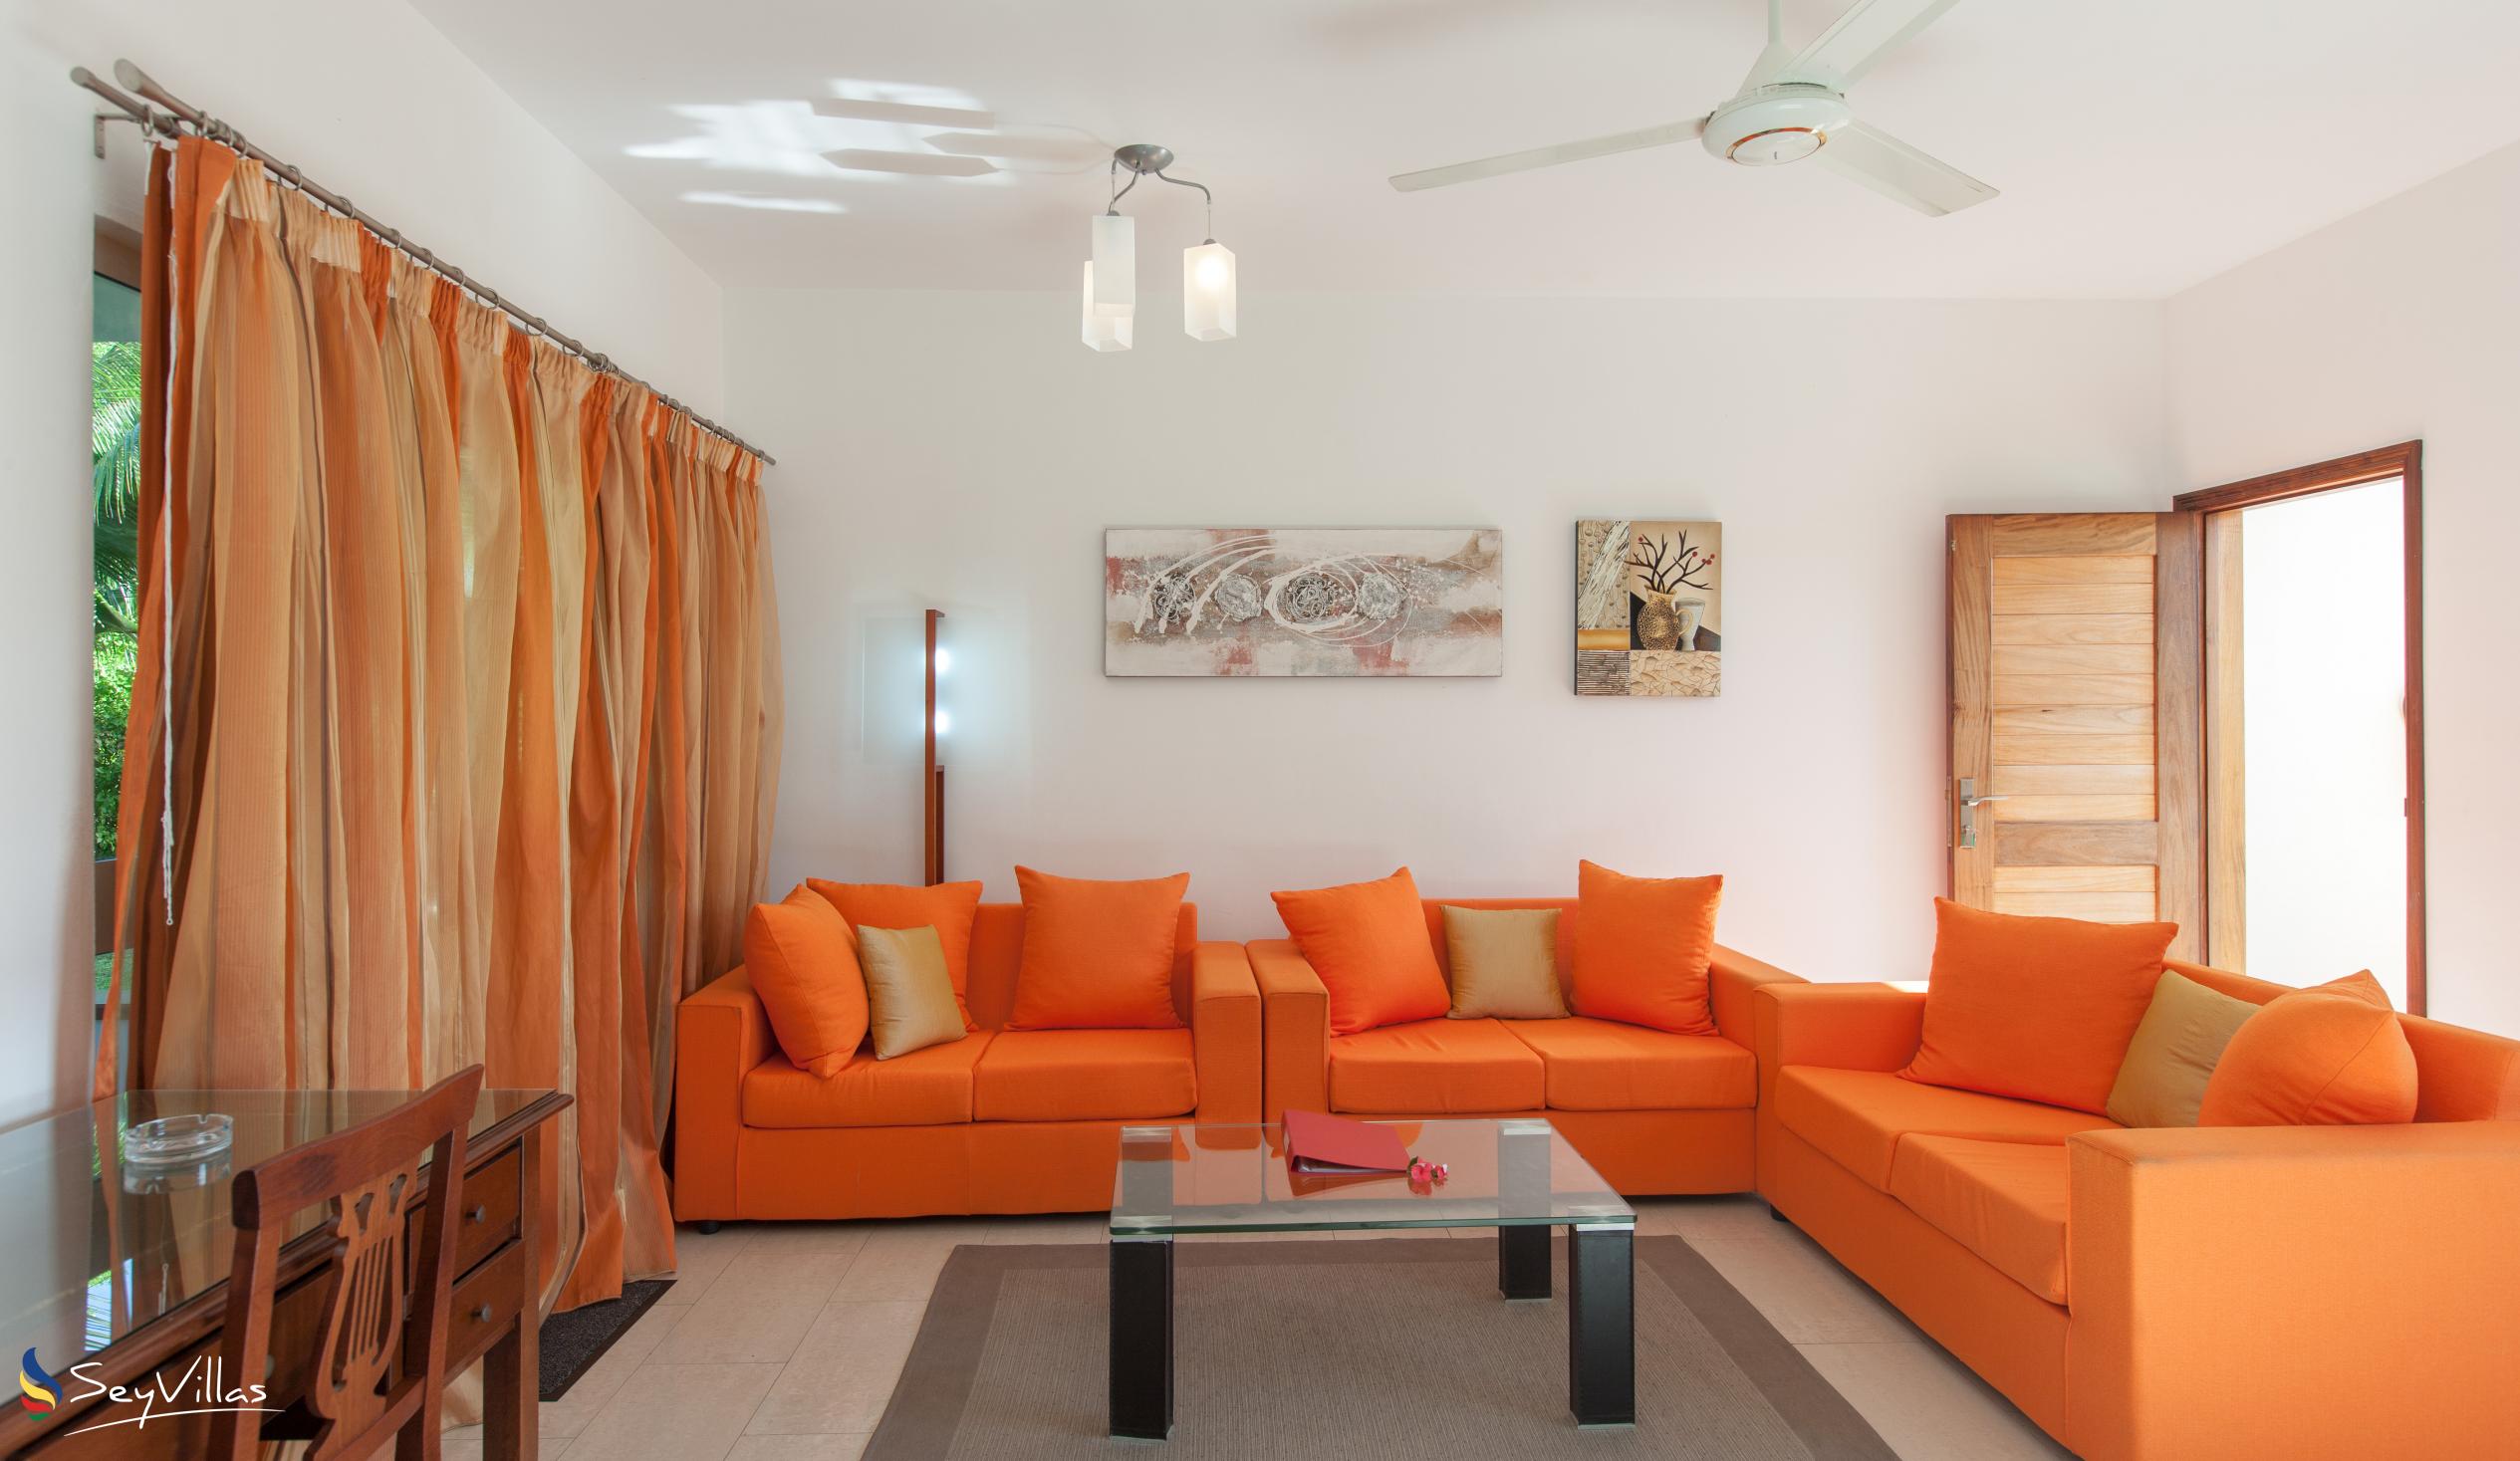 Foto 17: Cote d'Or Apartments - Appartamento familiare - Praslin (Seychelles)